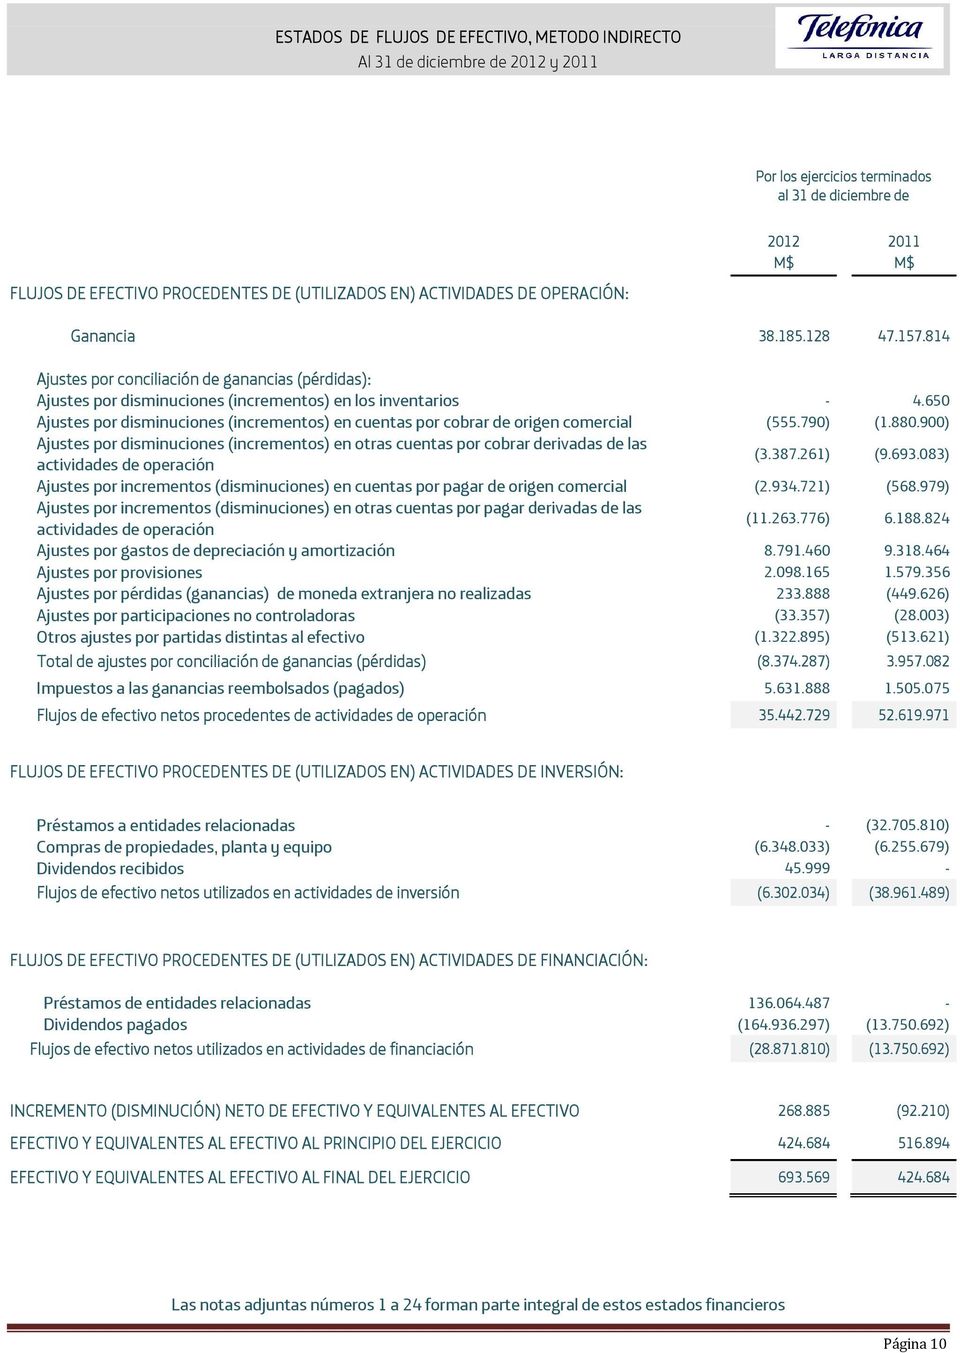 650 Ajustes por disminuciones (incrementos) en cuentas por cobrar de origen comercial (555.790) (1.880.